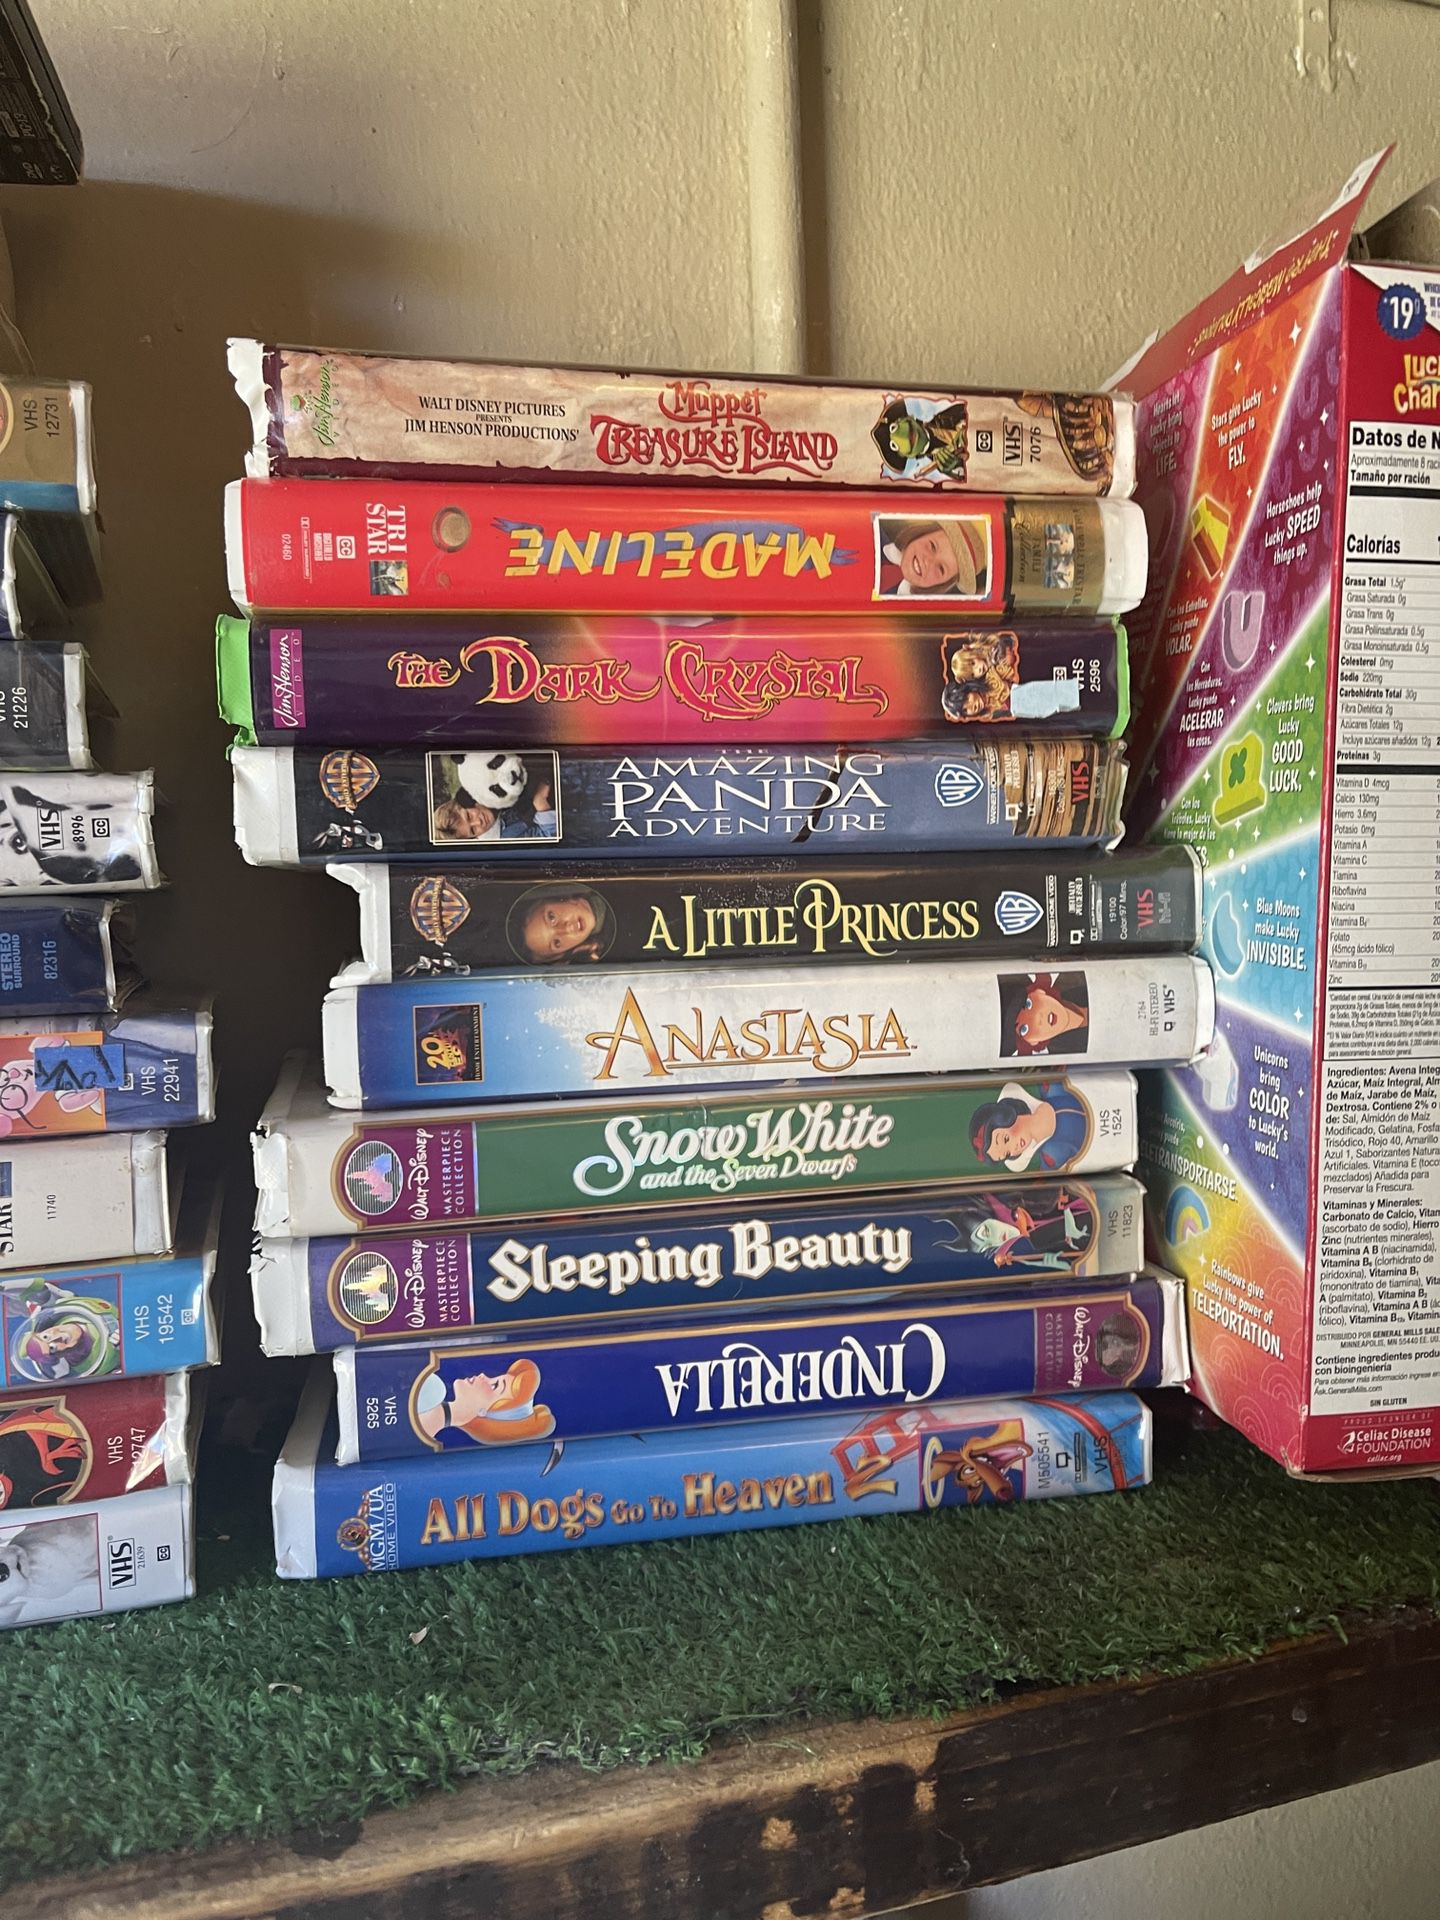 Disney VCR Collectibles